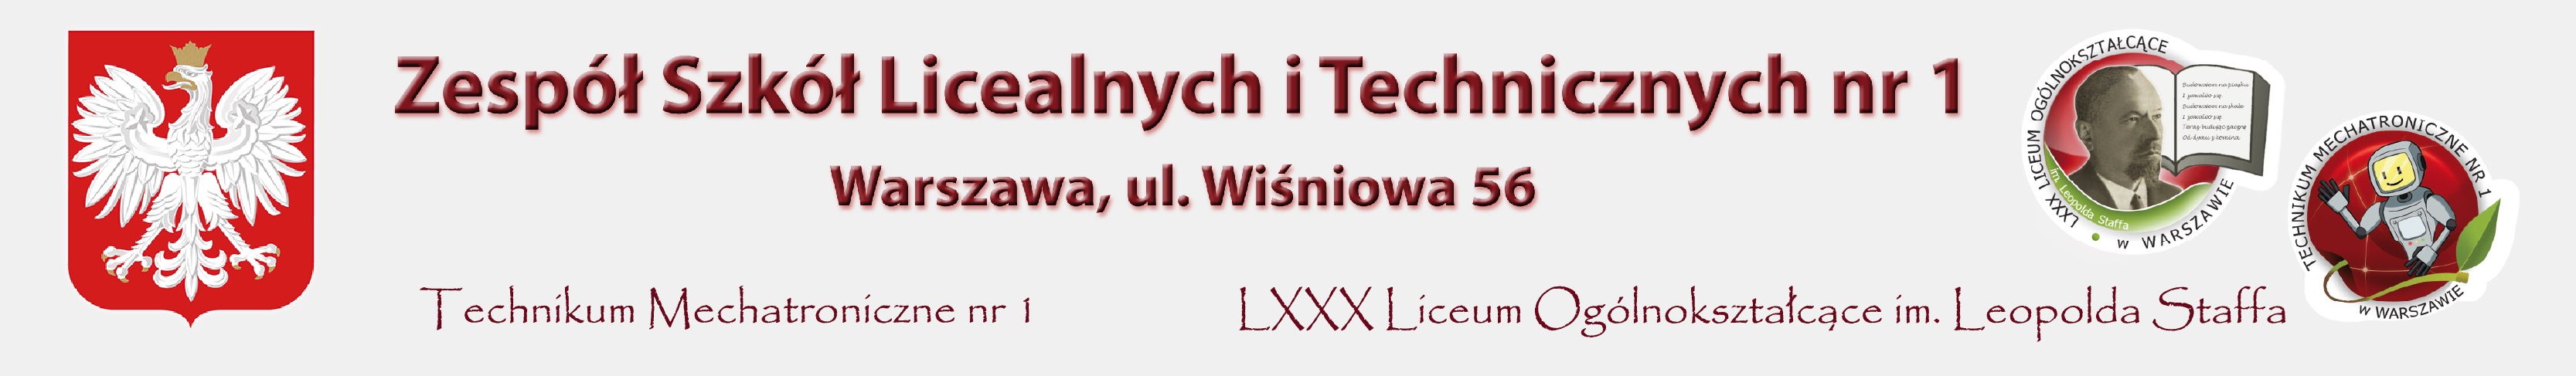 LXXX Liceum Ogólnokształcące im. Leopolda Staffa (ZSLiT nr 1)